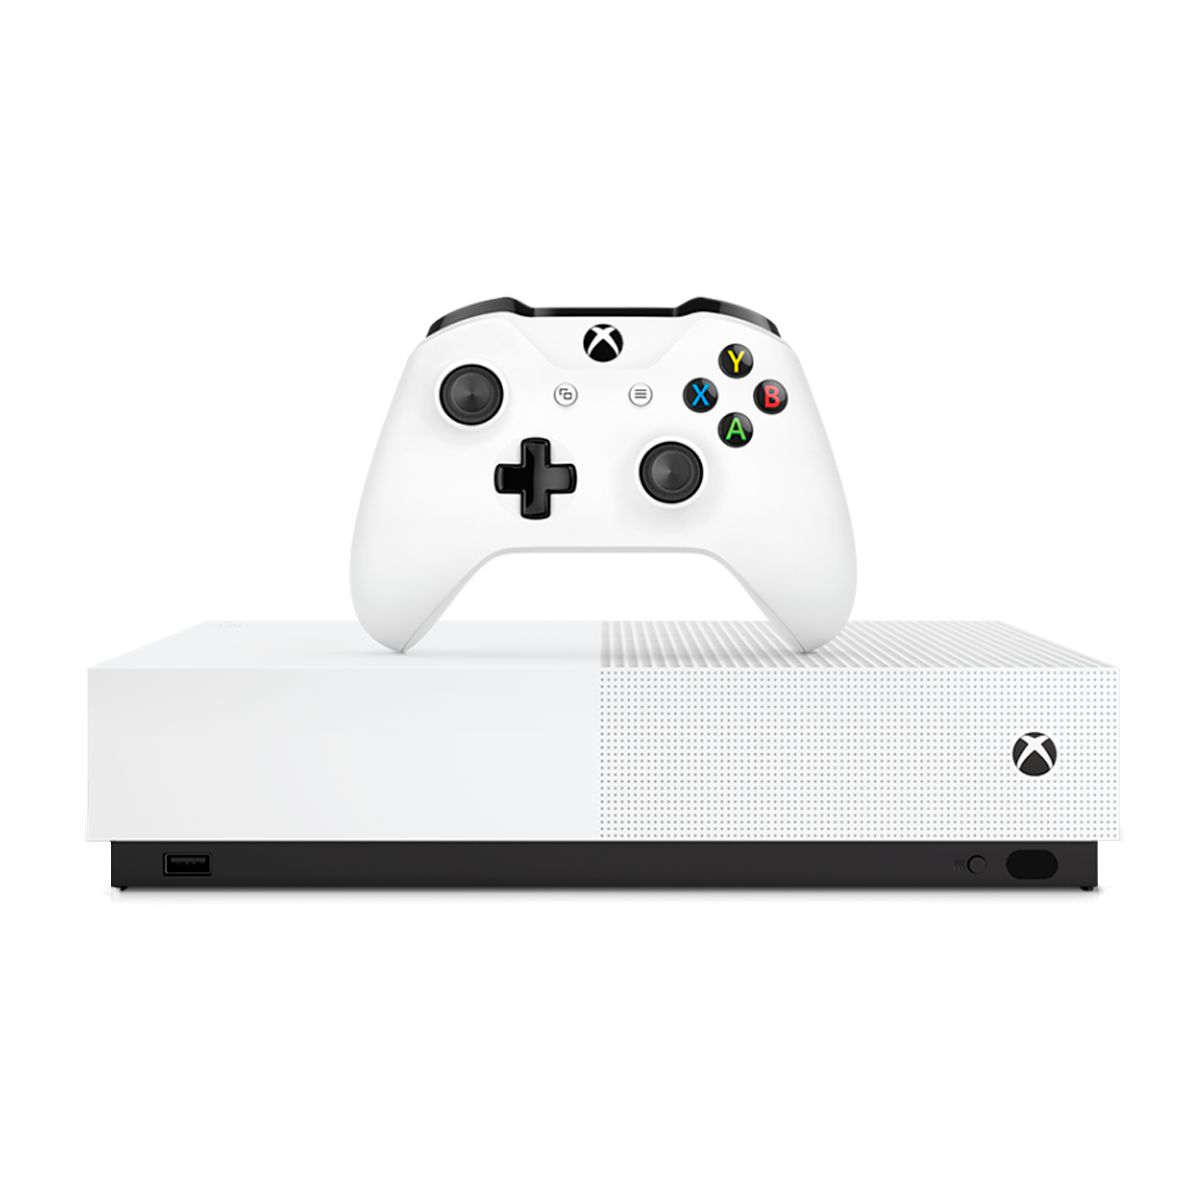 Jogo Forza Horizon - Xbox 360 Seminovo - SL Shop - A melhor loja de  smartphones, games, acessórios e assistência técnica